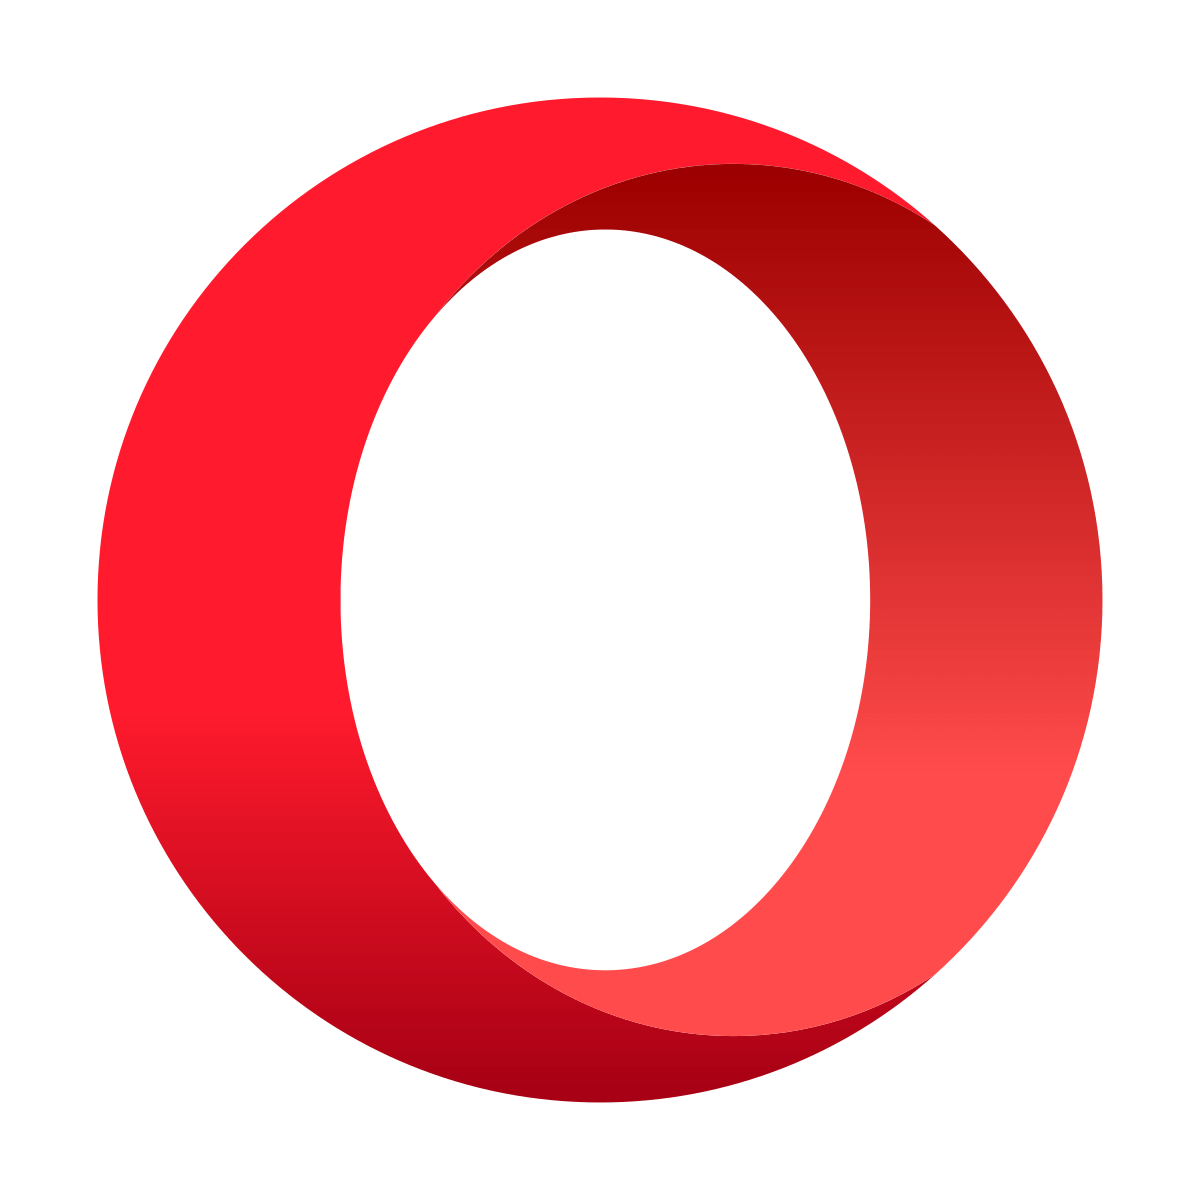 Solución completa: Opera sigue fallando en Windows 10, 8.1, 7